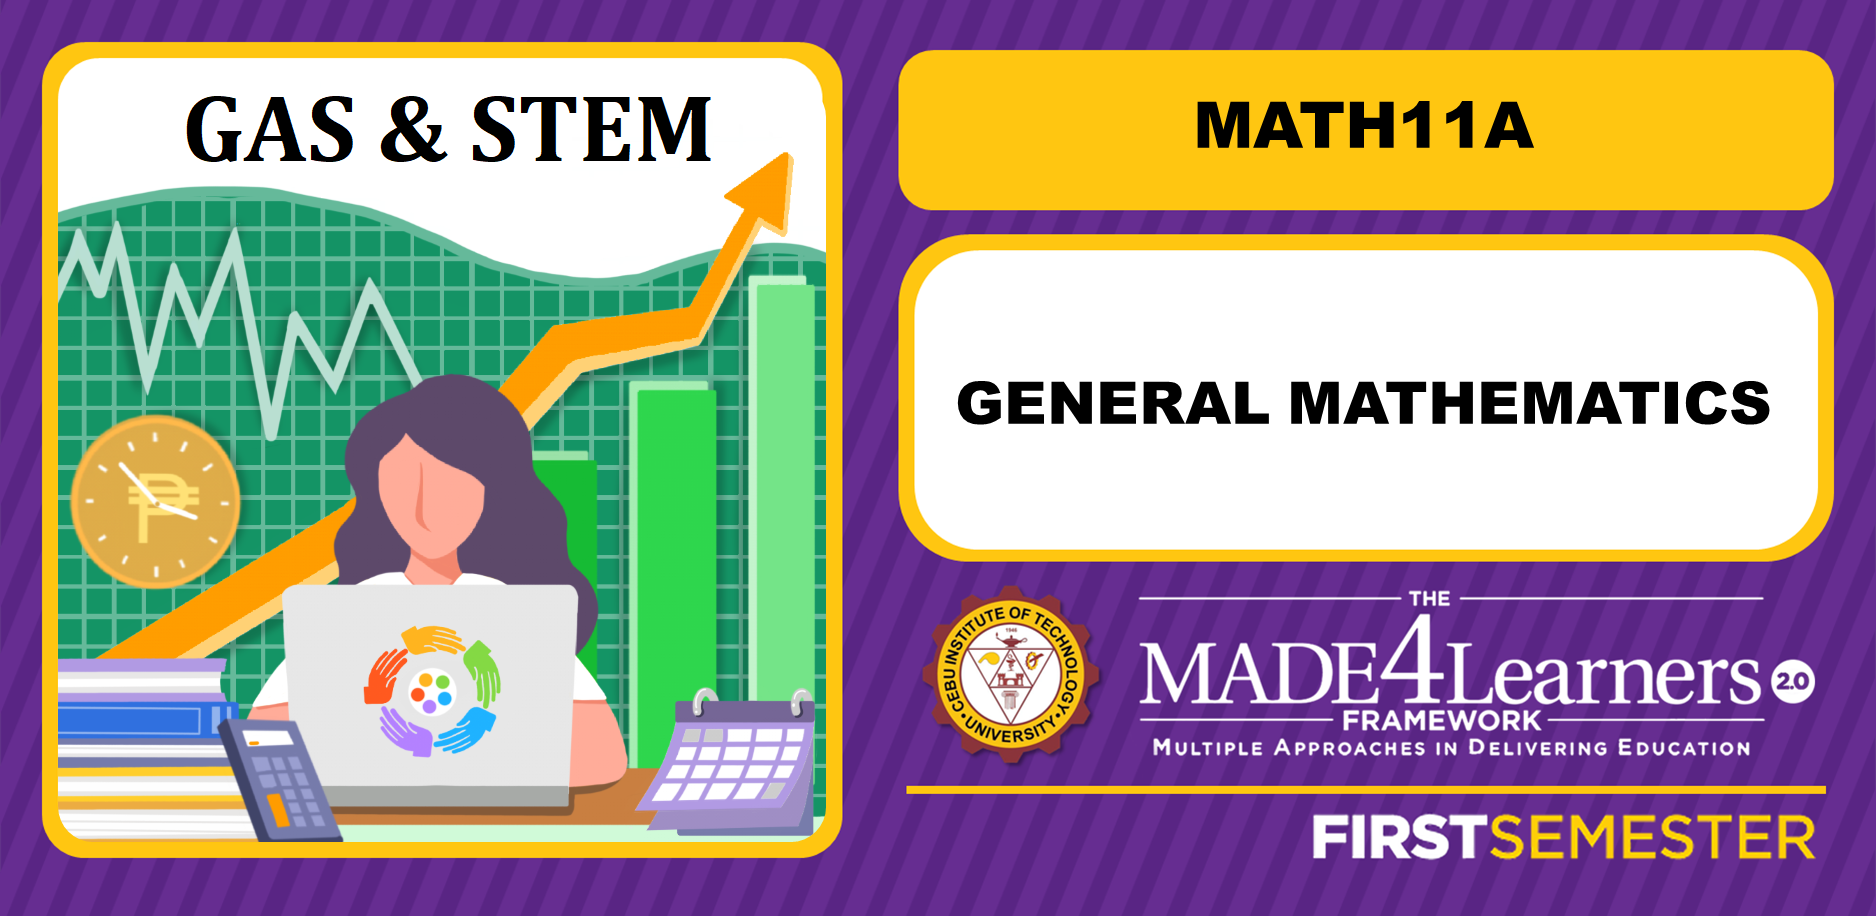 MATH11A: General Mathematics